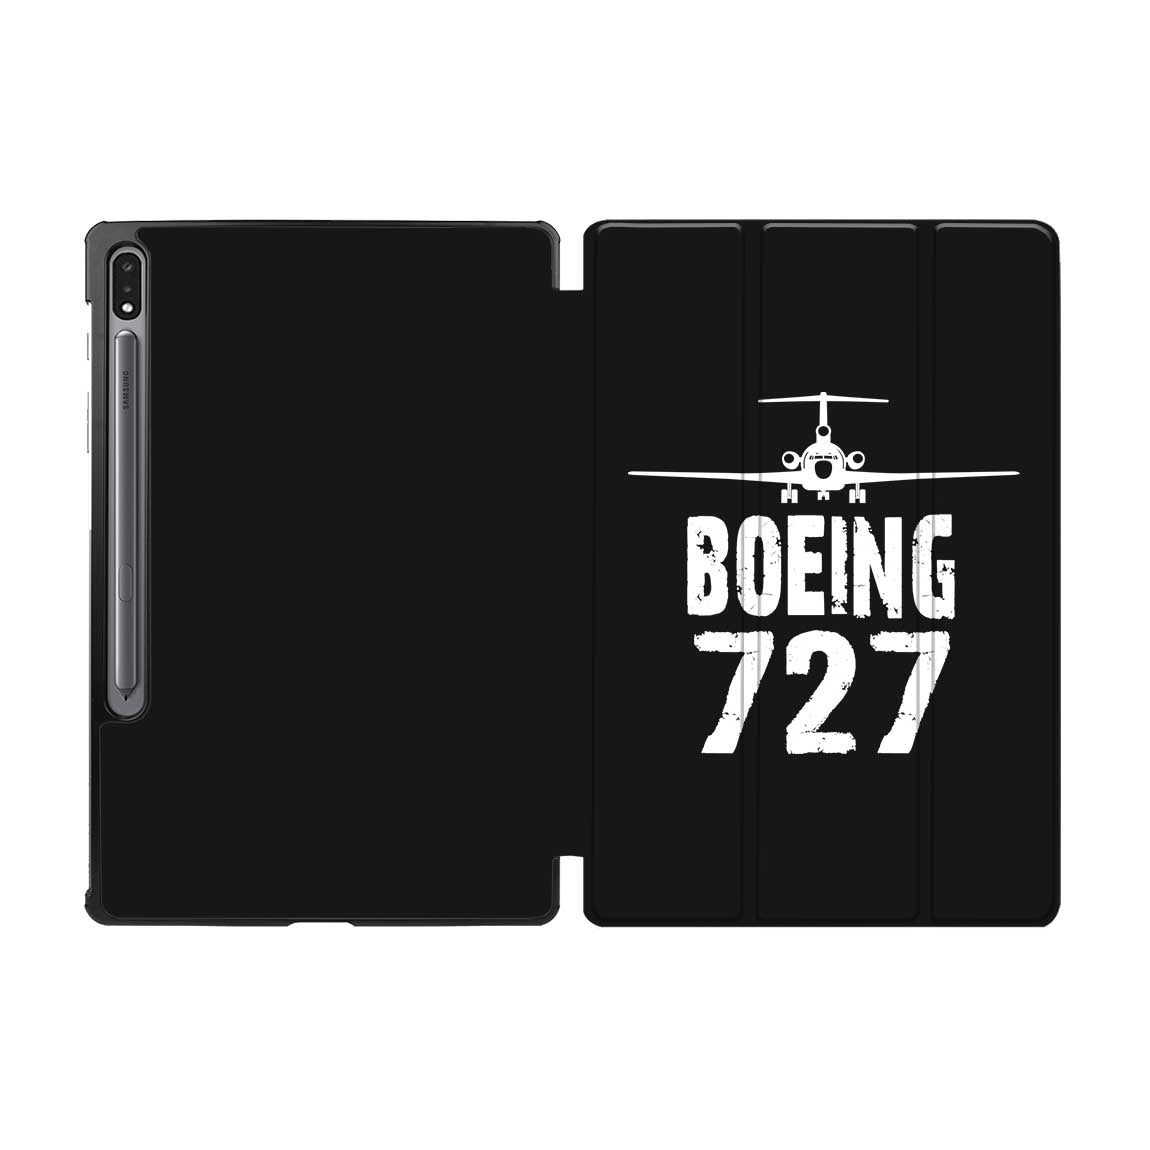 Boeing 727 & Plane Designed Samsung Tablet Cases